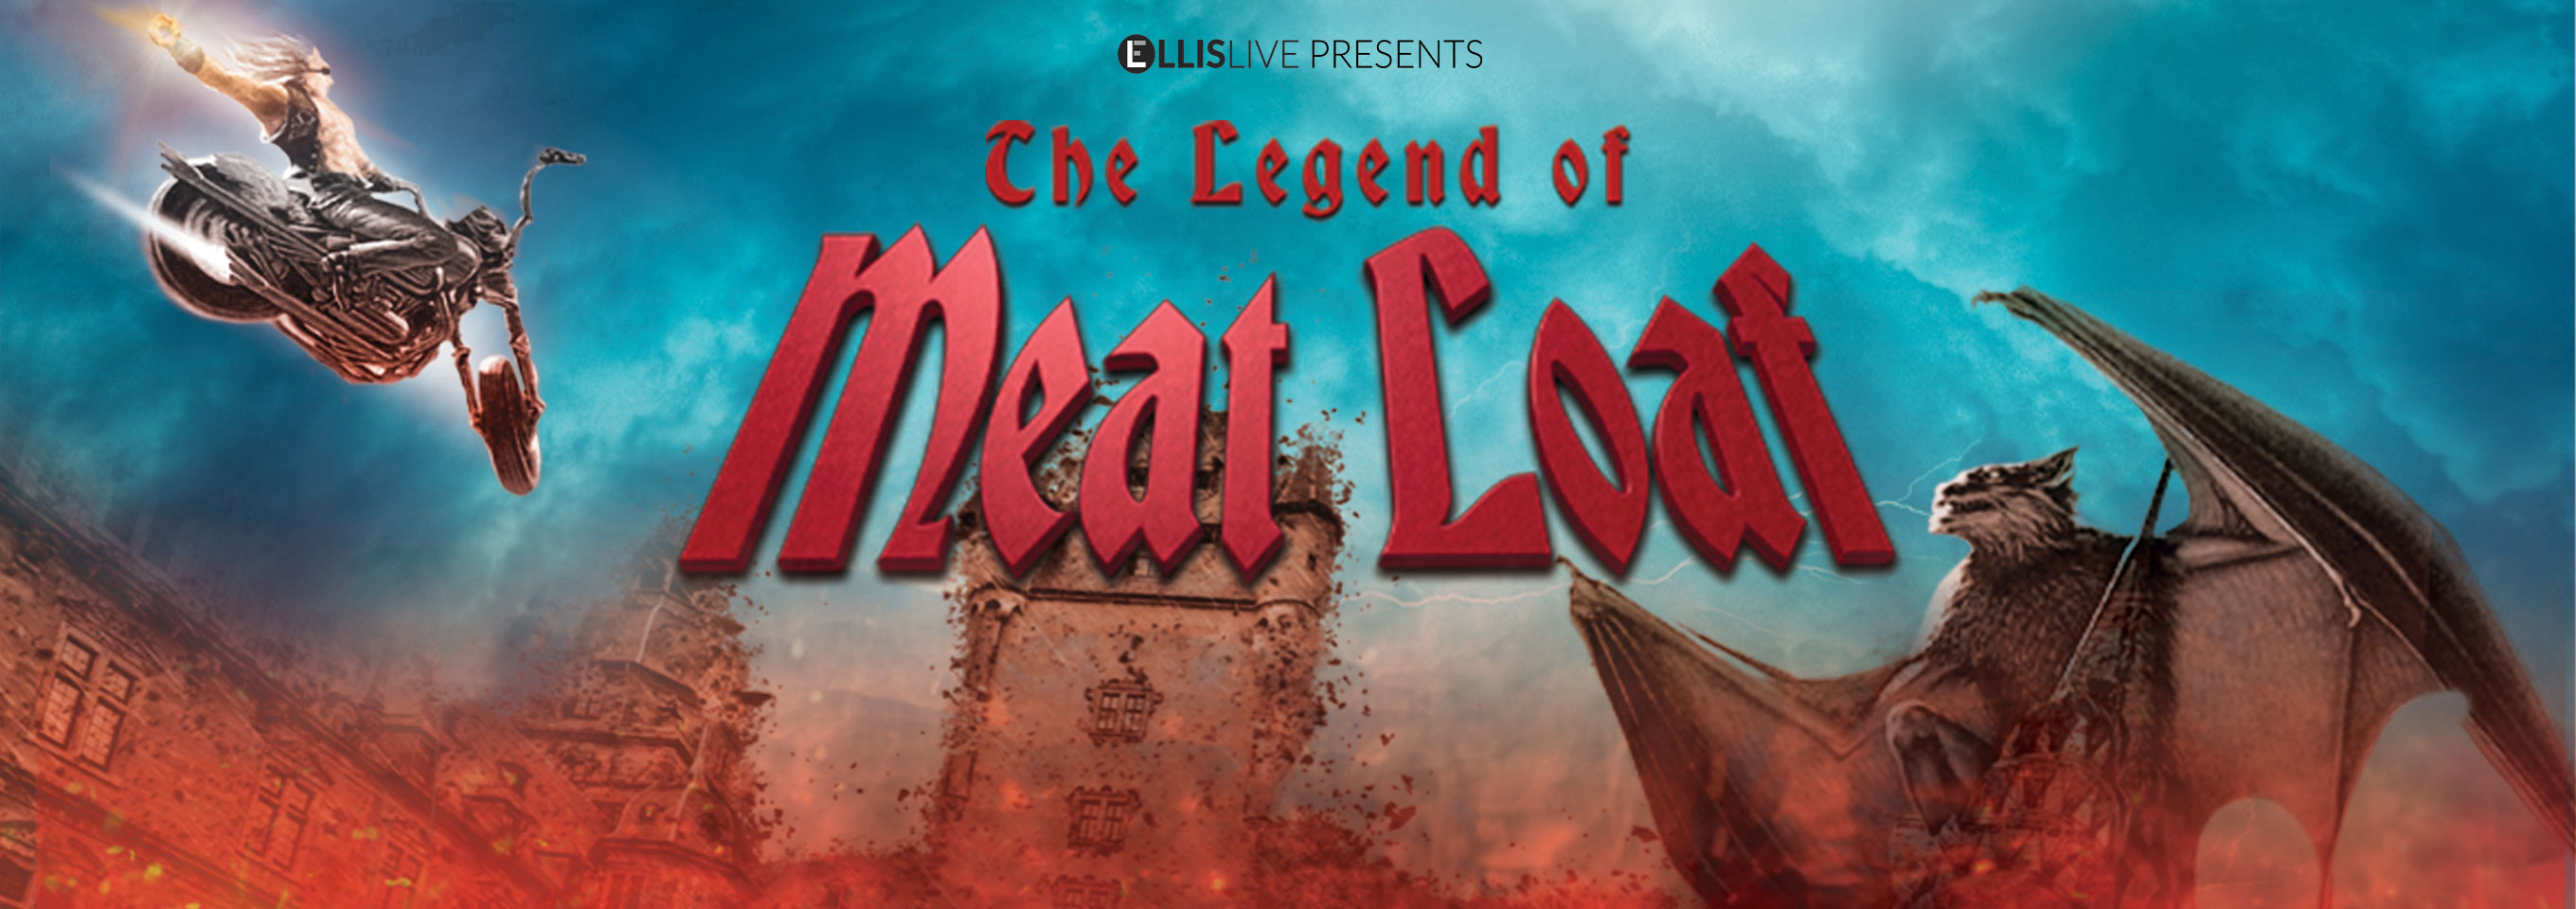 The Legend of Meatloaf hero image